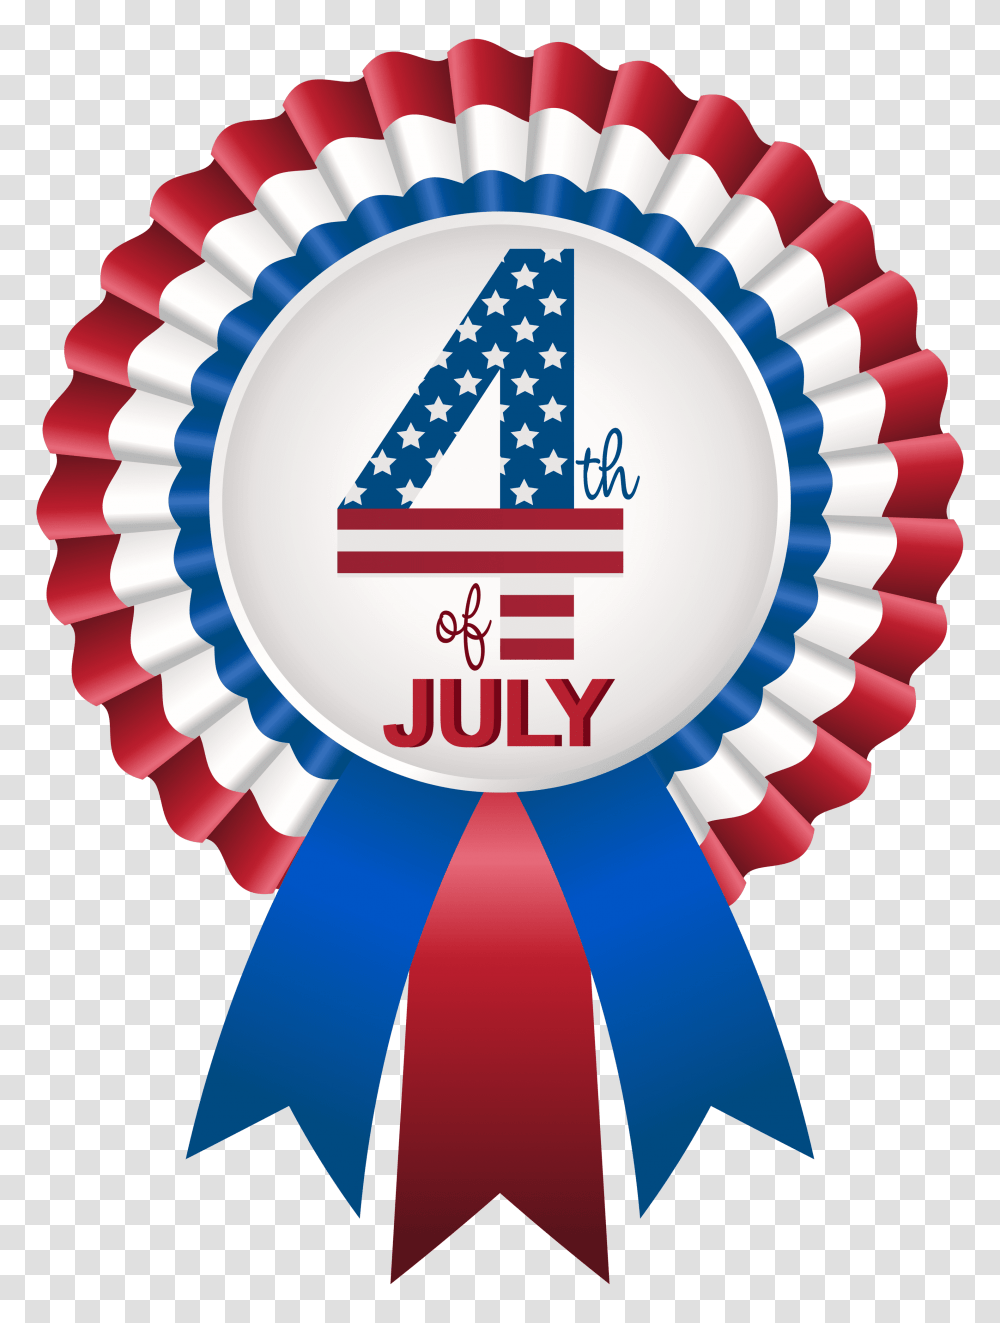 Of July Rosette Clip Art Image, Logo, Trademark, Badge Transparent Png